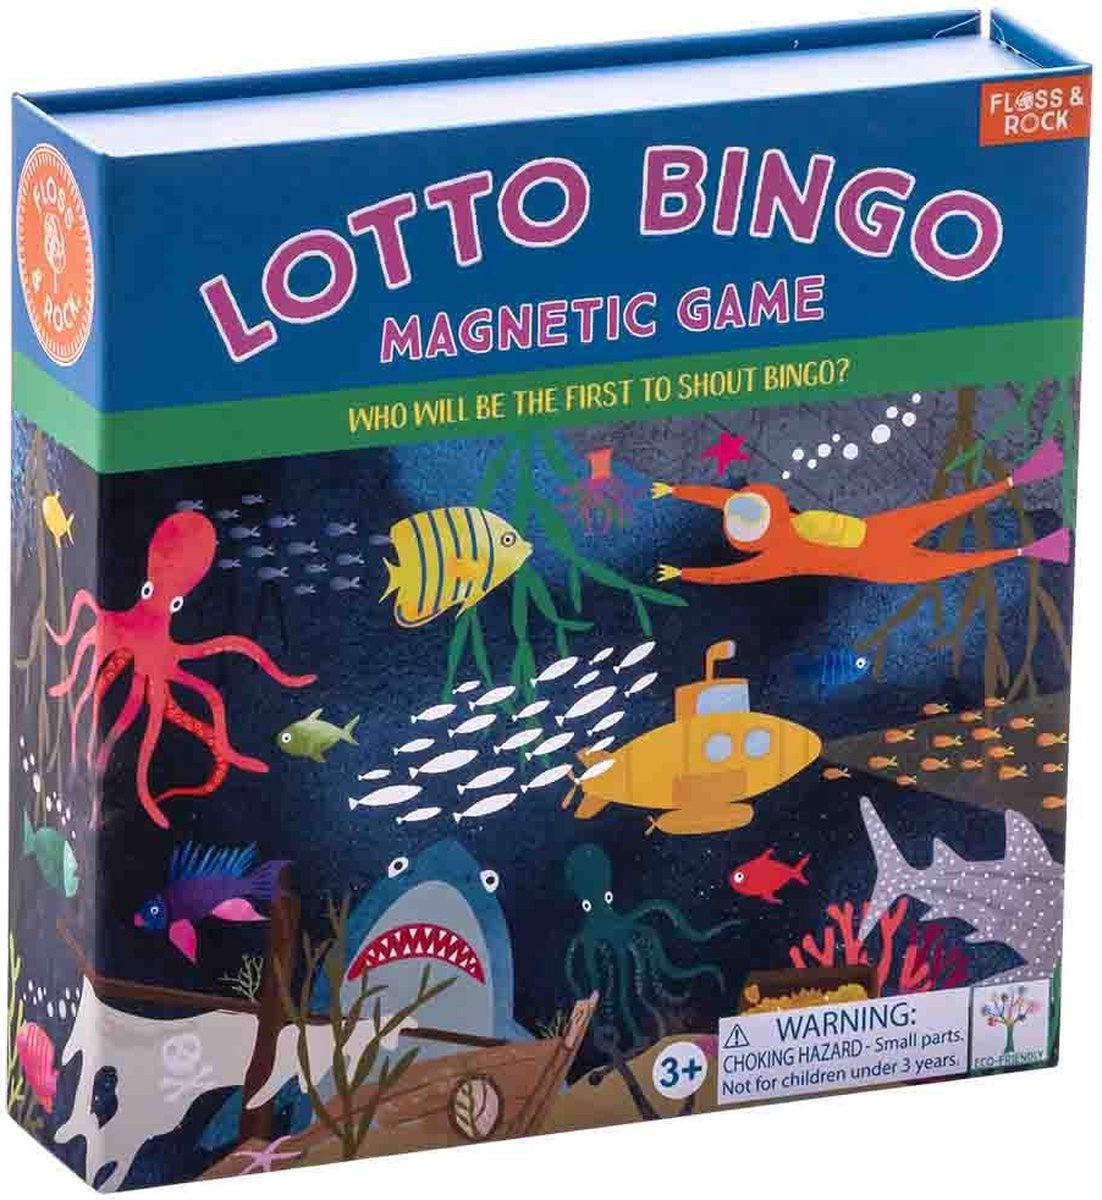 Floss & Rock Lotto / Bingo spel, Oceaan - 17 x 17 x 4 cm - Multi